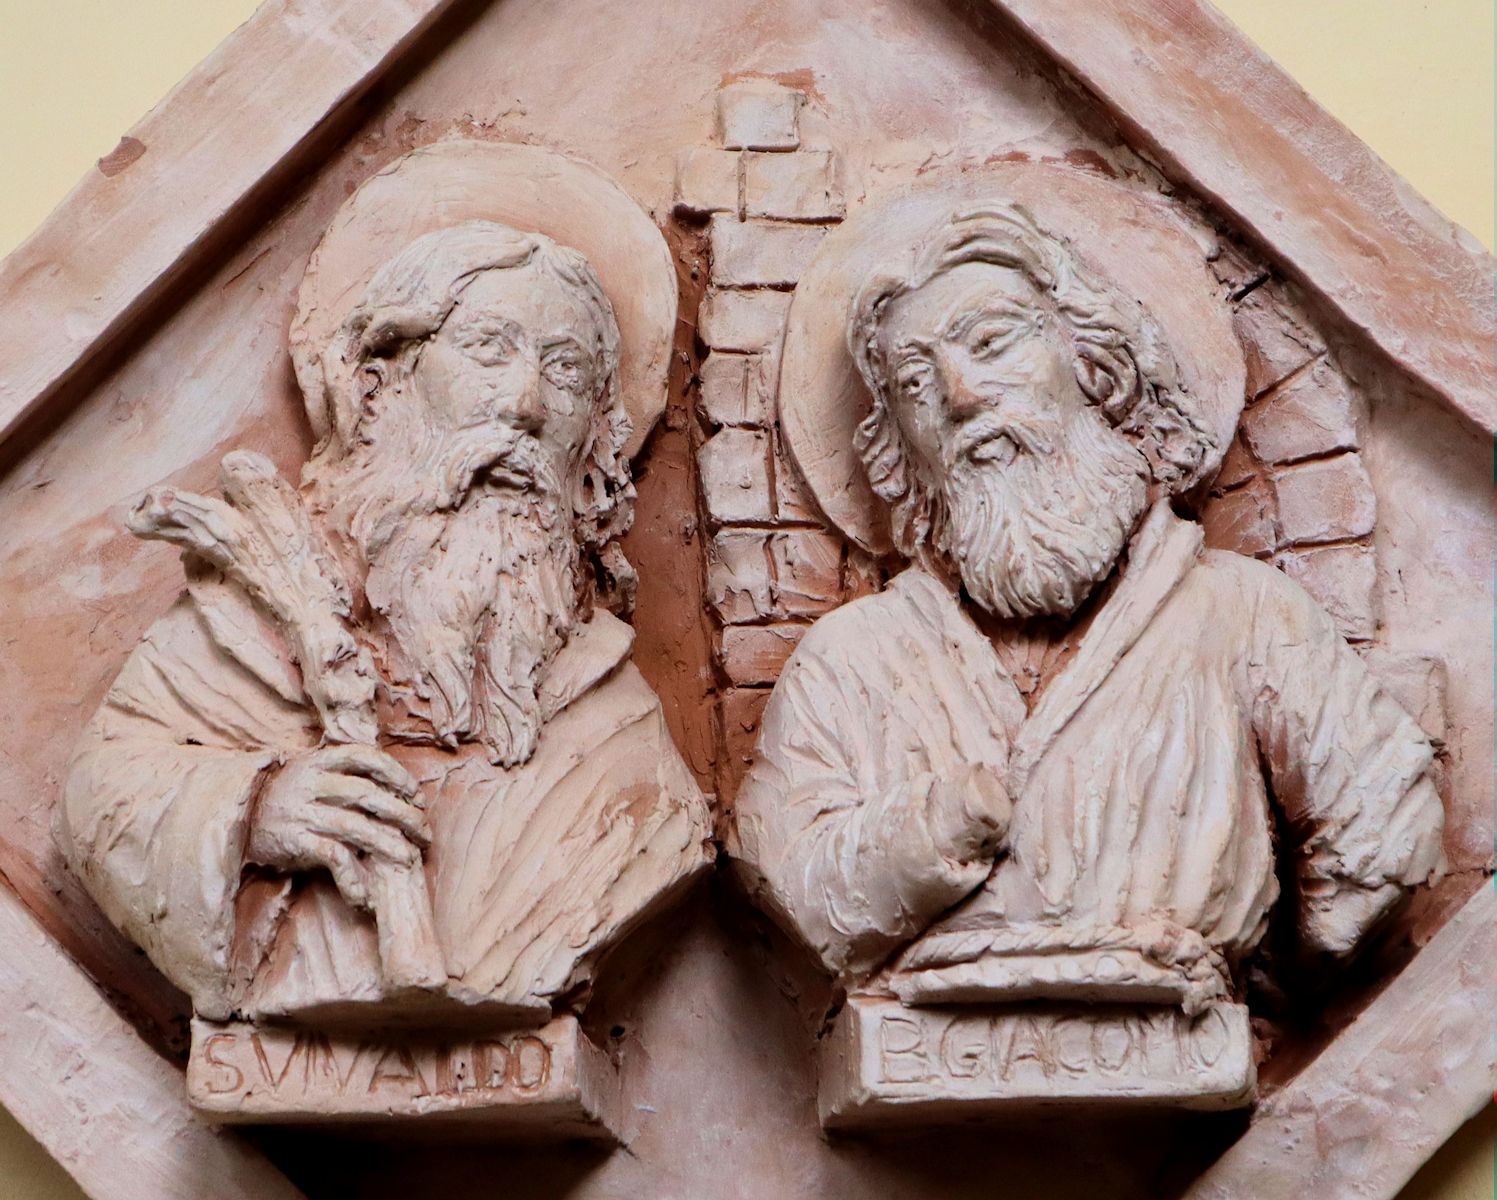 Roberto Chiti und Giorgio Finazzo: Jakob (rechts) und Vivaldus von San Gimignano, Terracottarelief, 2019, im Kreuzgang der Kathedrale in Volterra